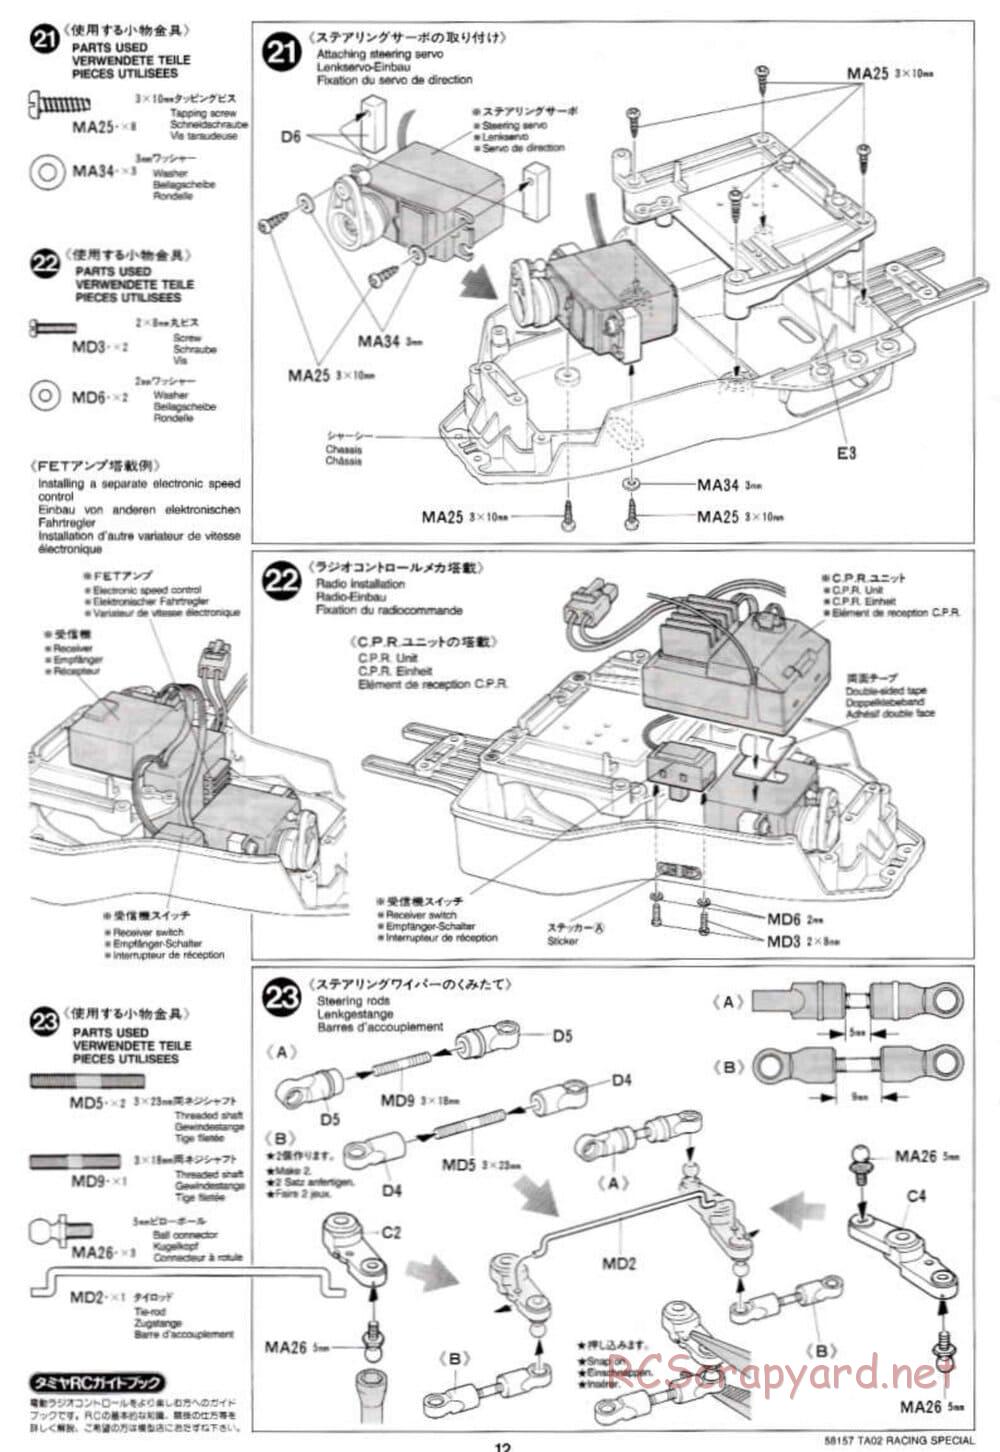 Tamiya - TA-02RS Chassis - Manual - Page 12